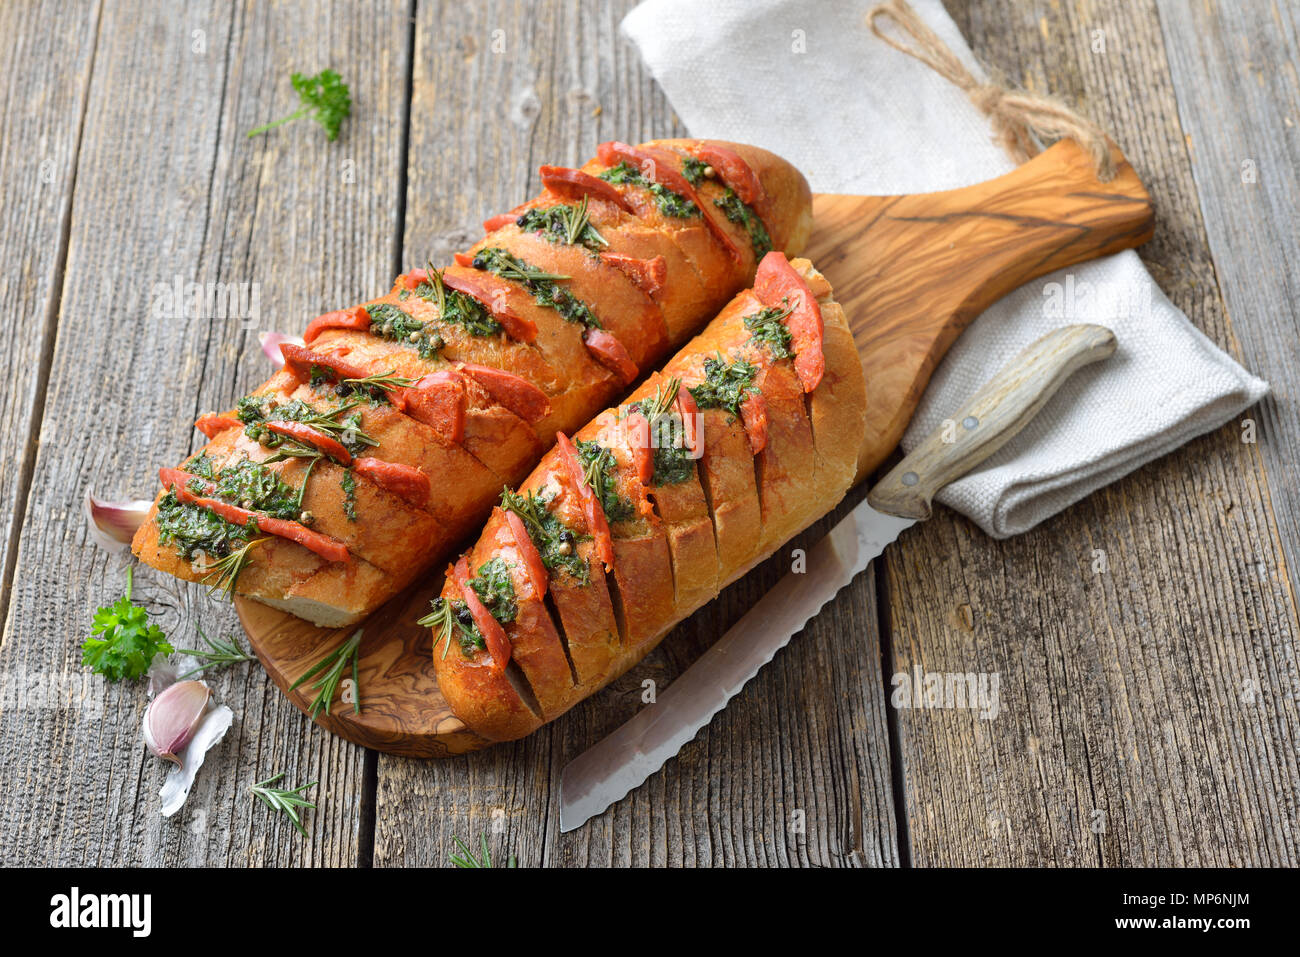 Spanisch Essen: gebratene Brot mit Kräuterbutter und heiße Chorizo Salami  frisch aus dem Ofen Stockfotografie - Alamy